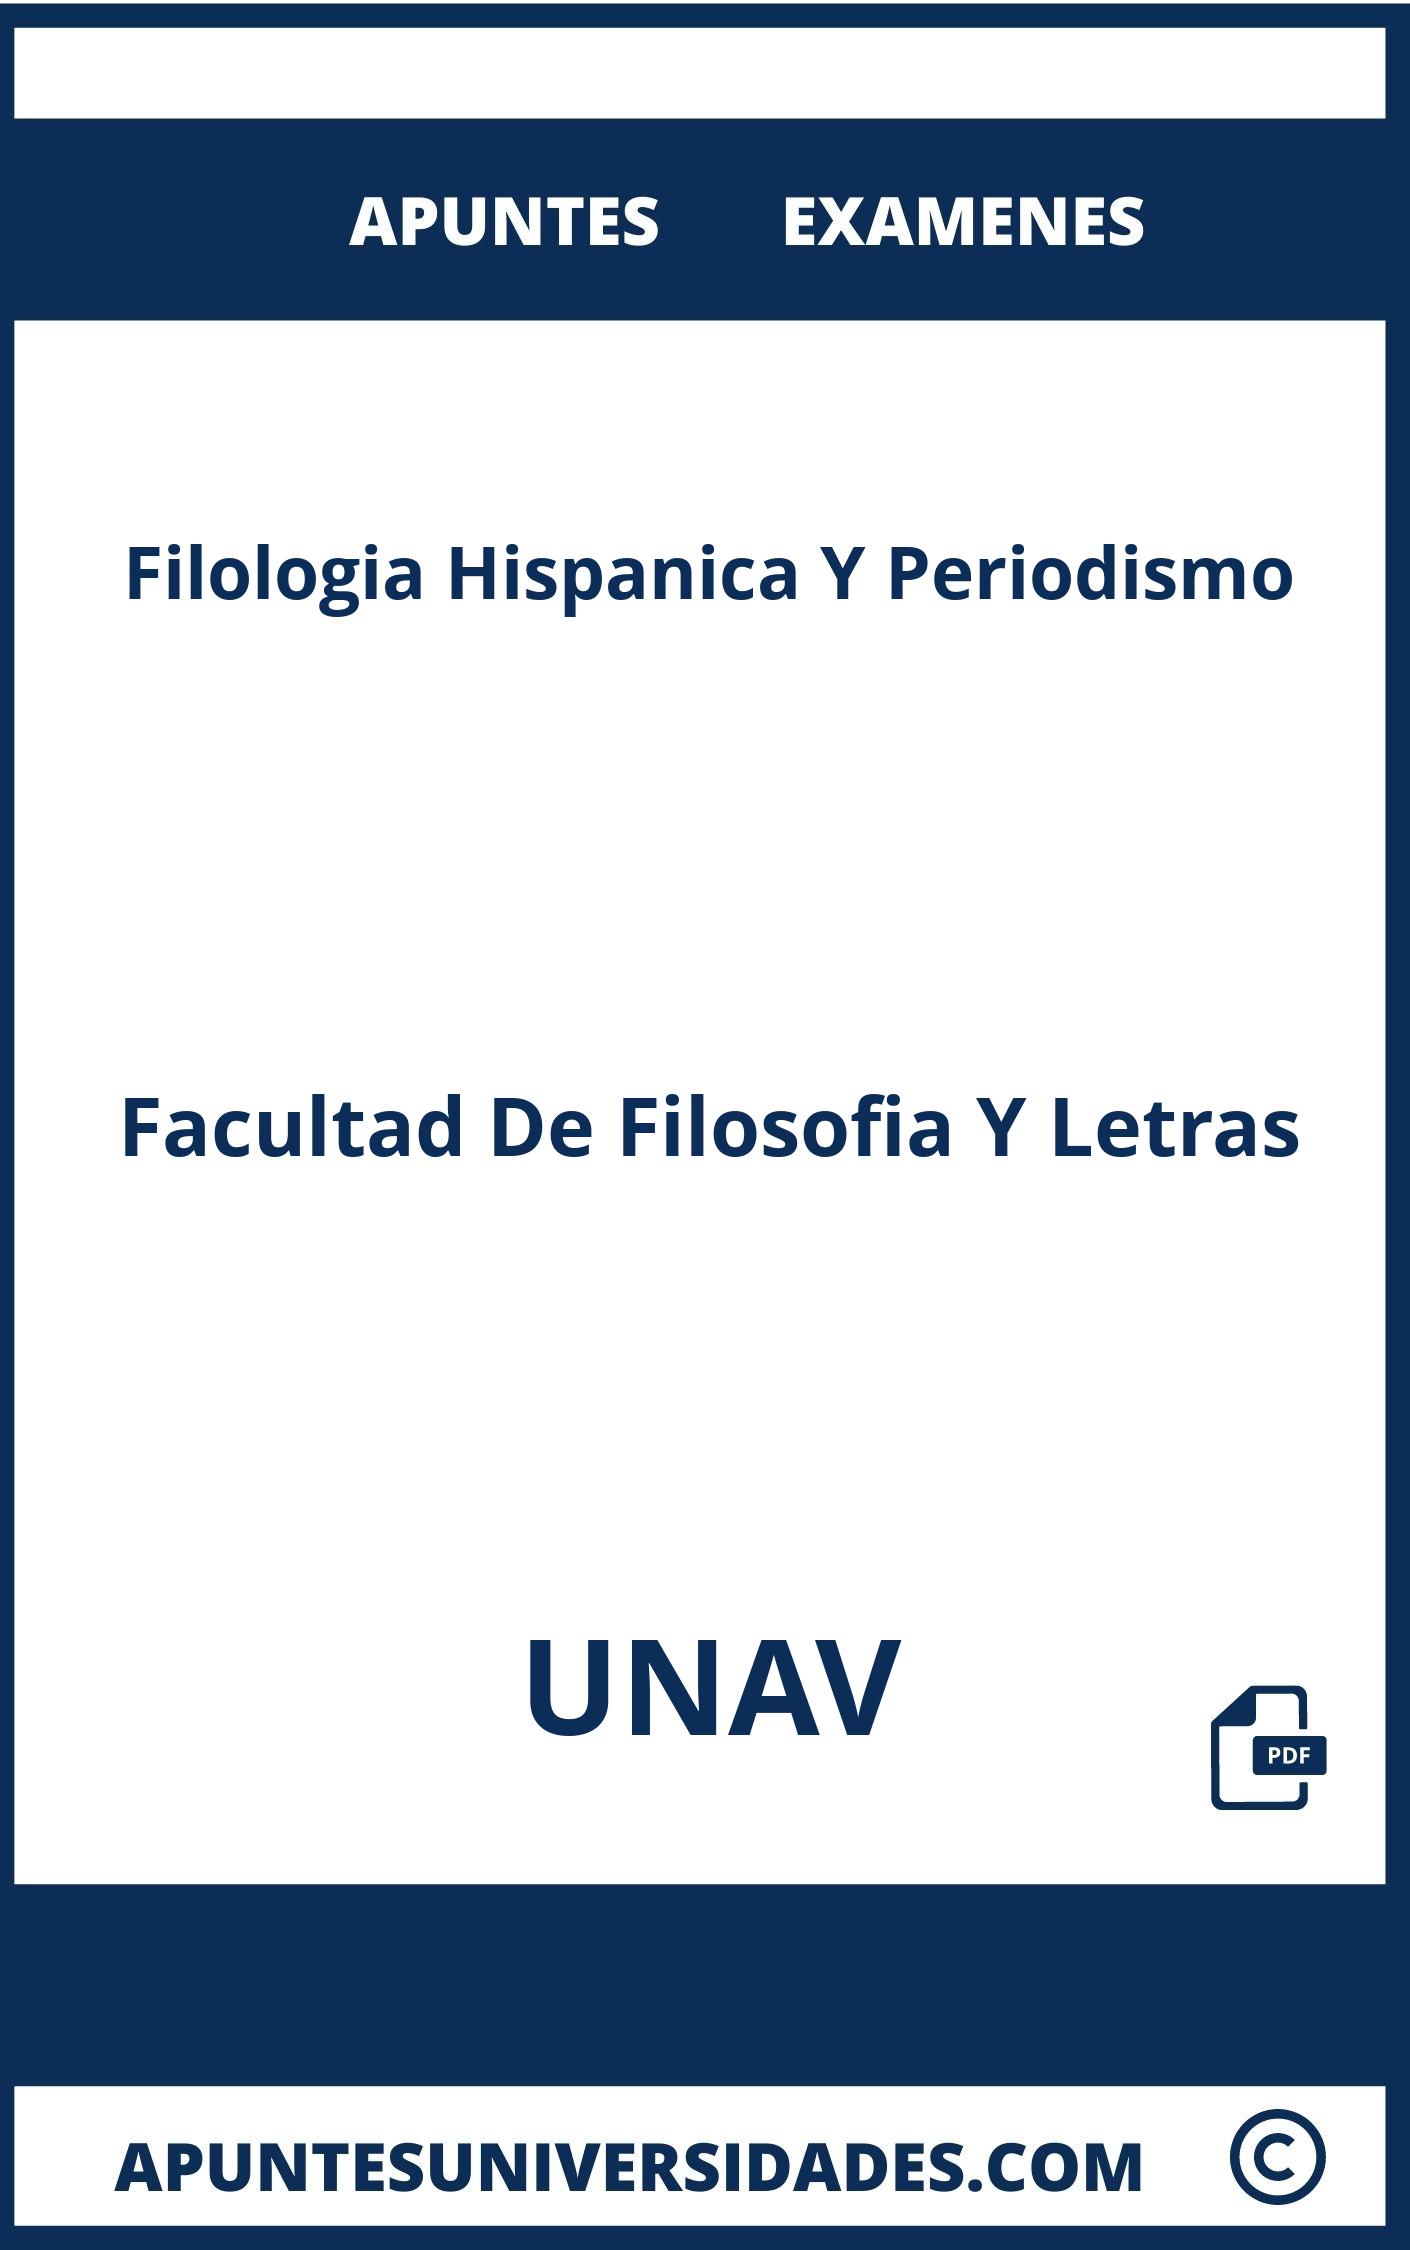 Filologia Hispanica Y Periodismo UNAV Apuntes Examenes